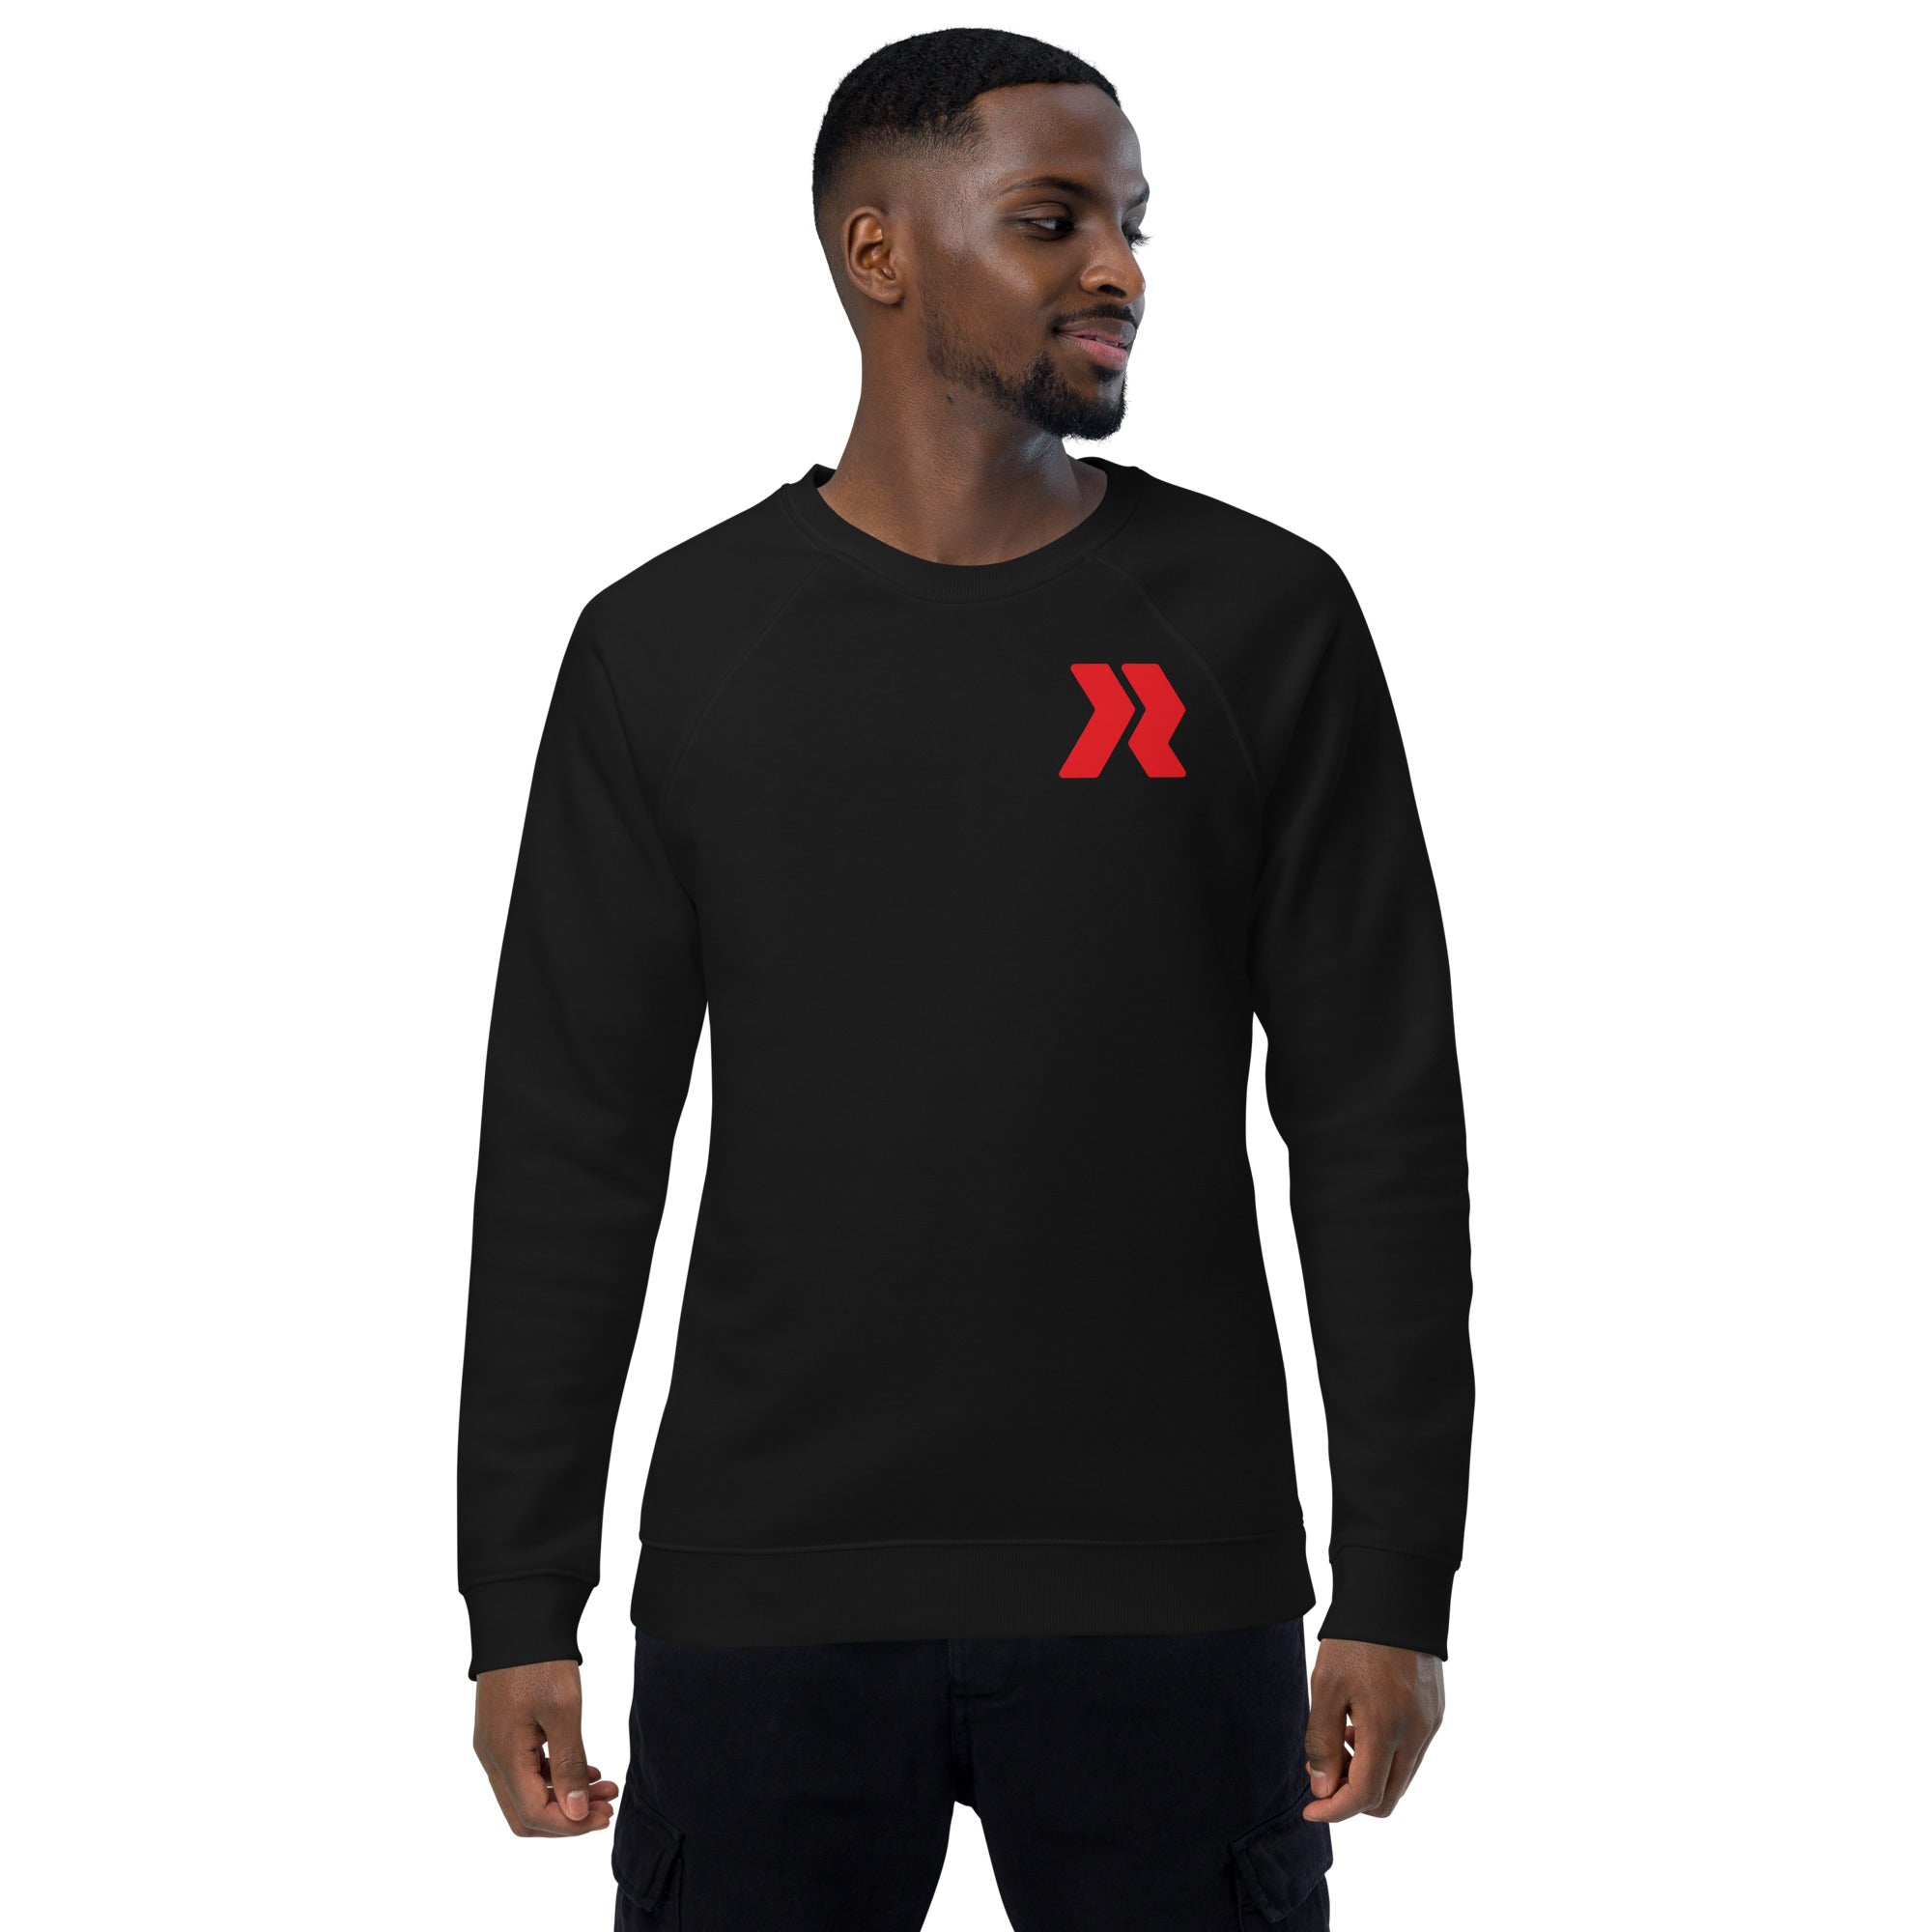 FC Logo R - R/W - Black Unisex organic raglan sweatshirt